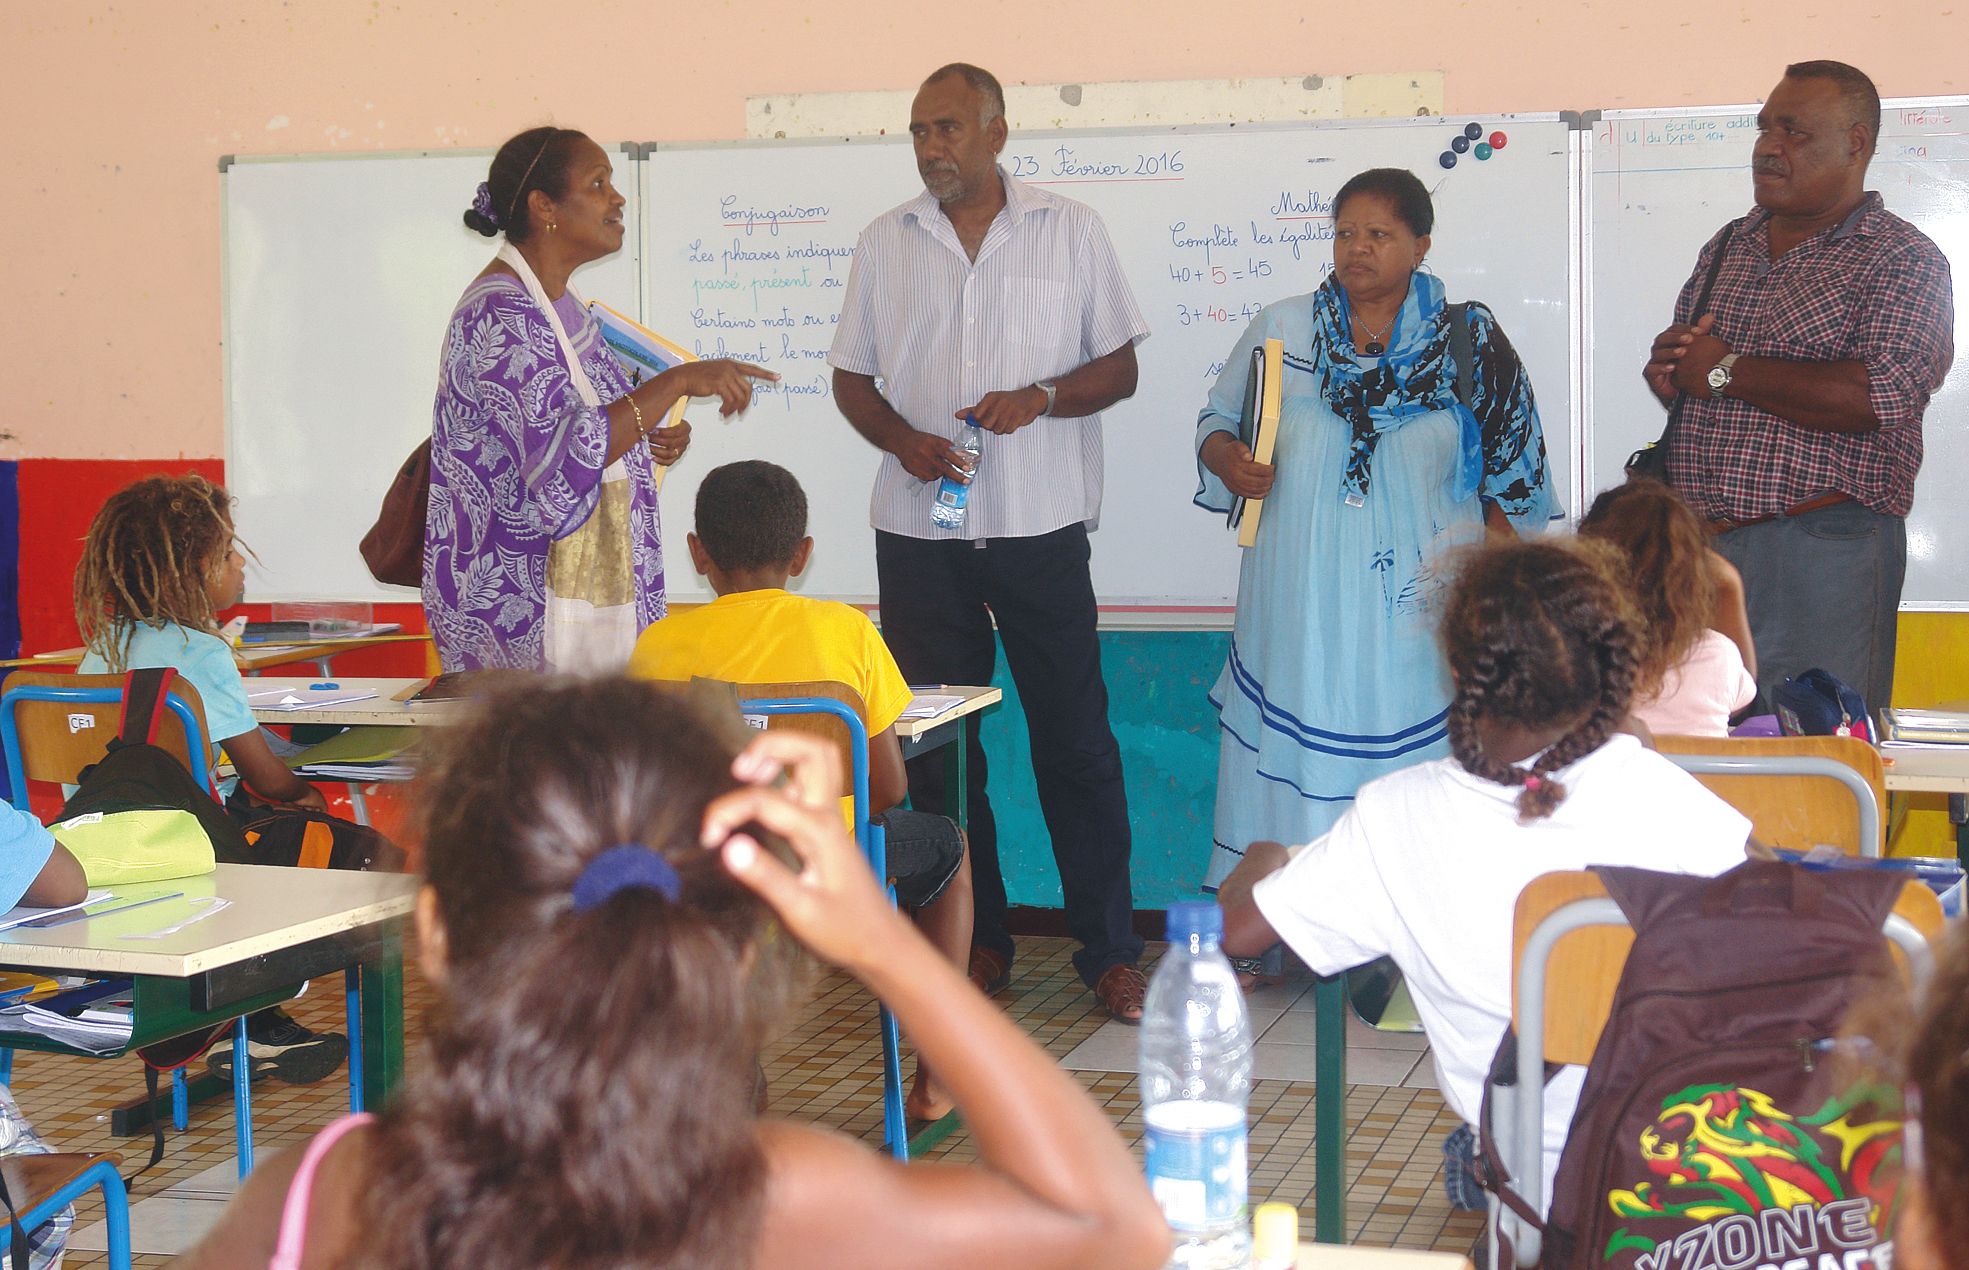 Ecole de Tadine, mardi 23 février. La délégation est venue à la rencontre des enseignants dans leur classe pour recueillir les impressions sur la rentrée.